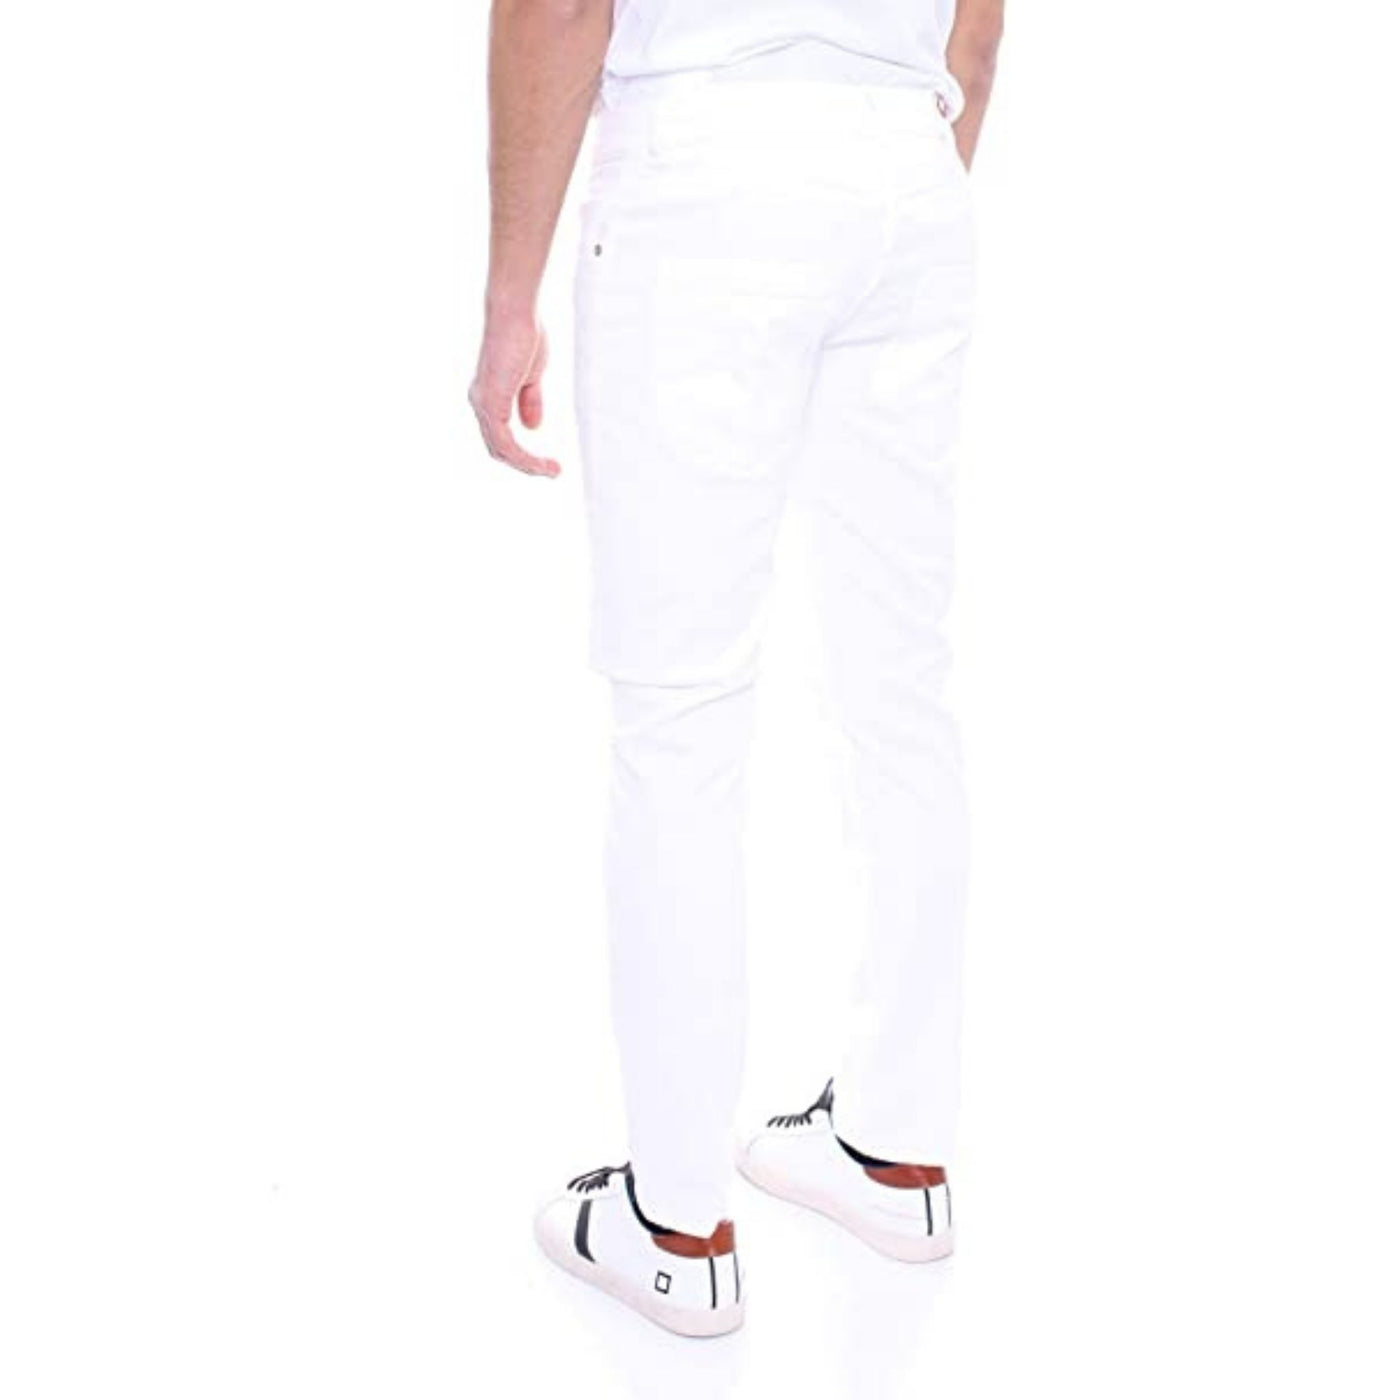 Jeans da uomo bianco firmato Dondup su modello vista retro